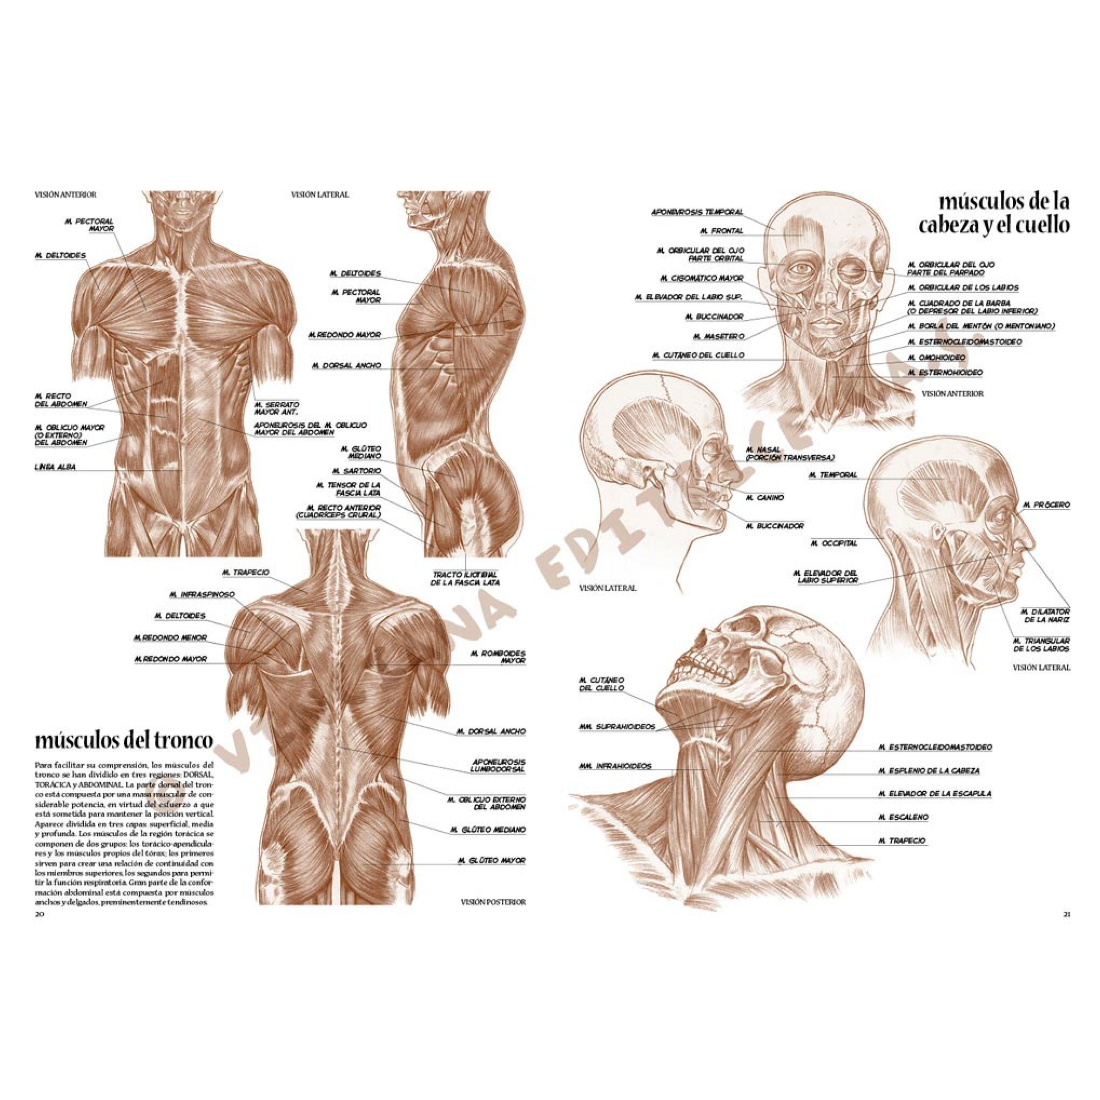 Livro Coleção Leonardo Nº 4 Anatomia edições vinciana